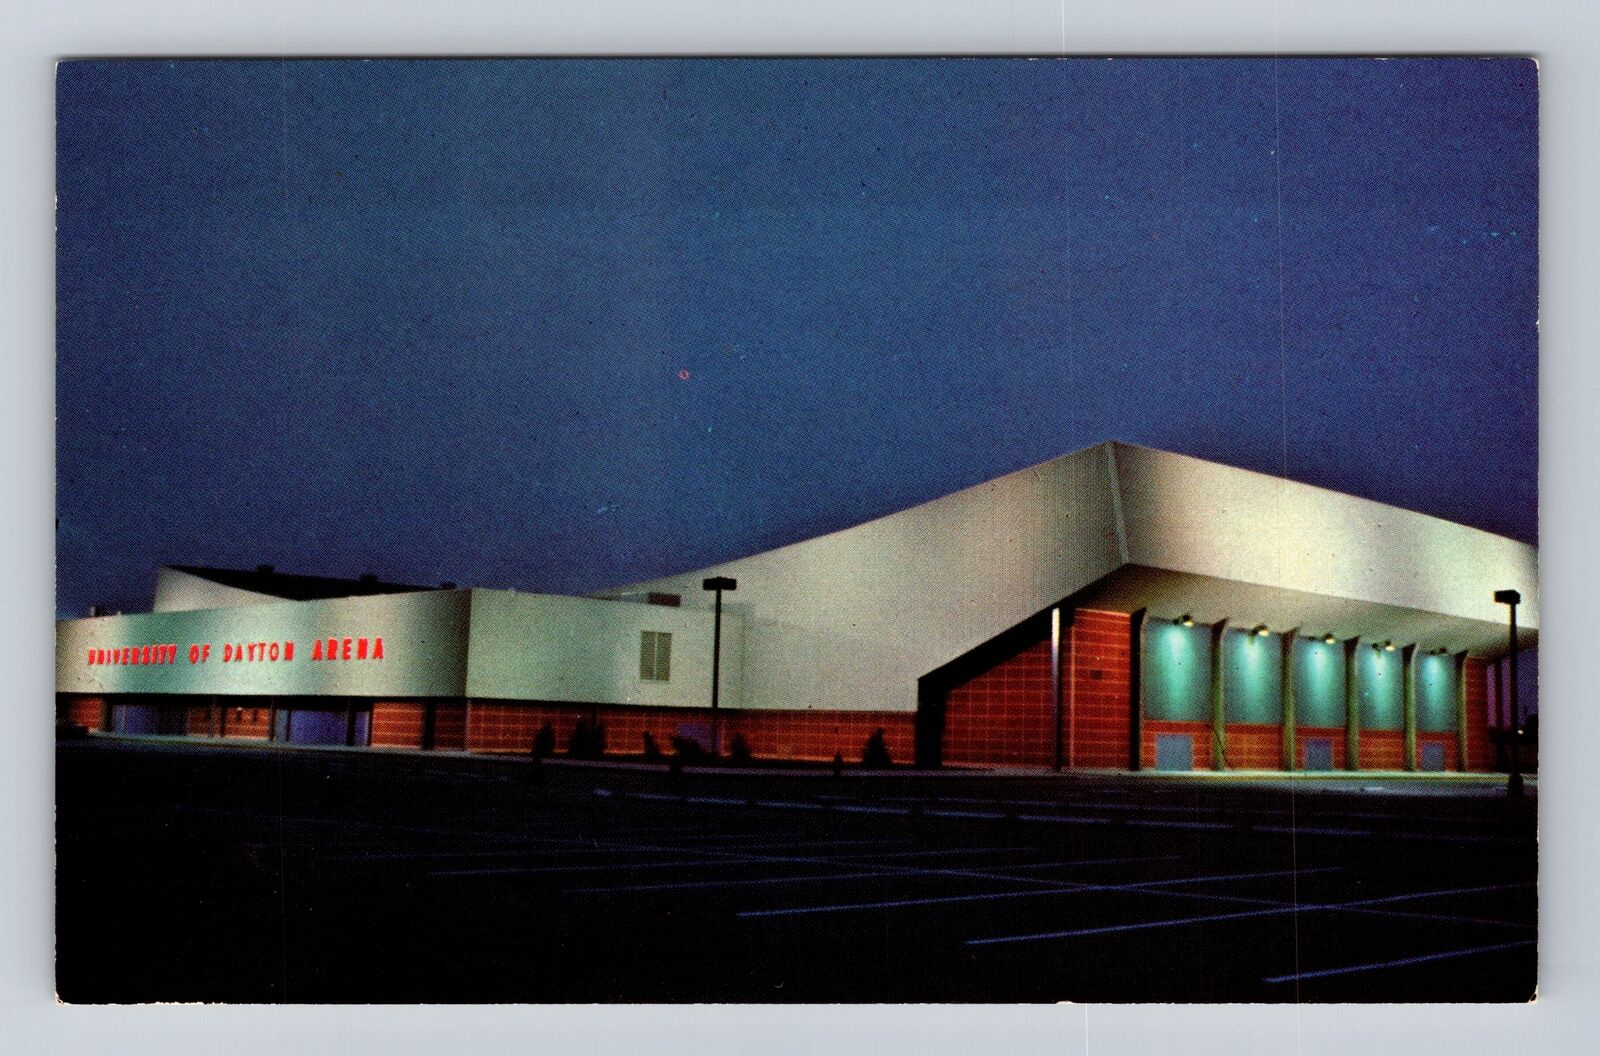 Dayton OH-Ohio, University Of Dayton Arena, Antique, Vintage Souvenir Postcard